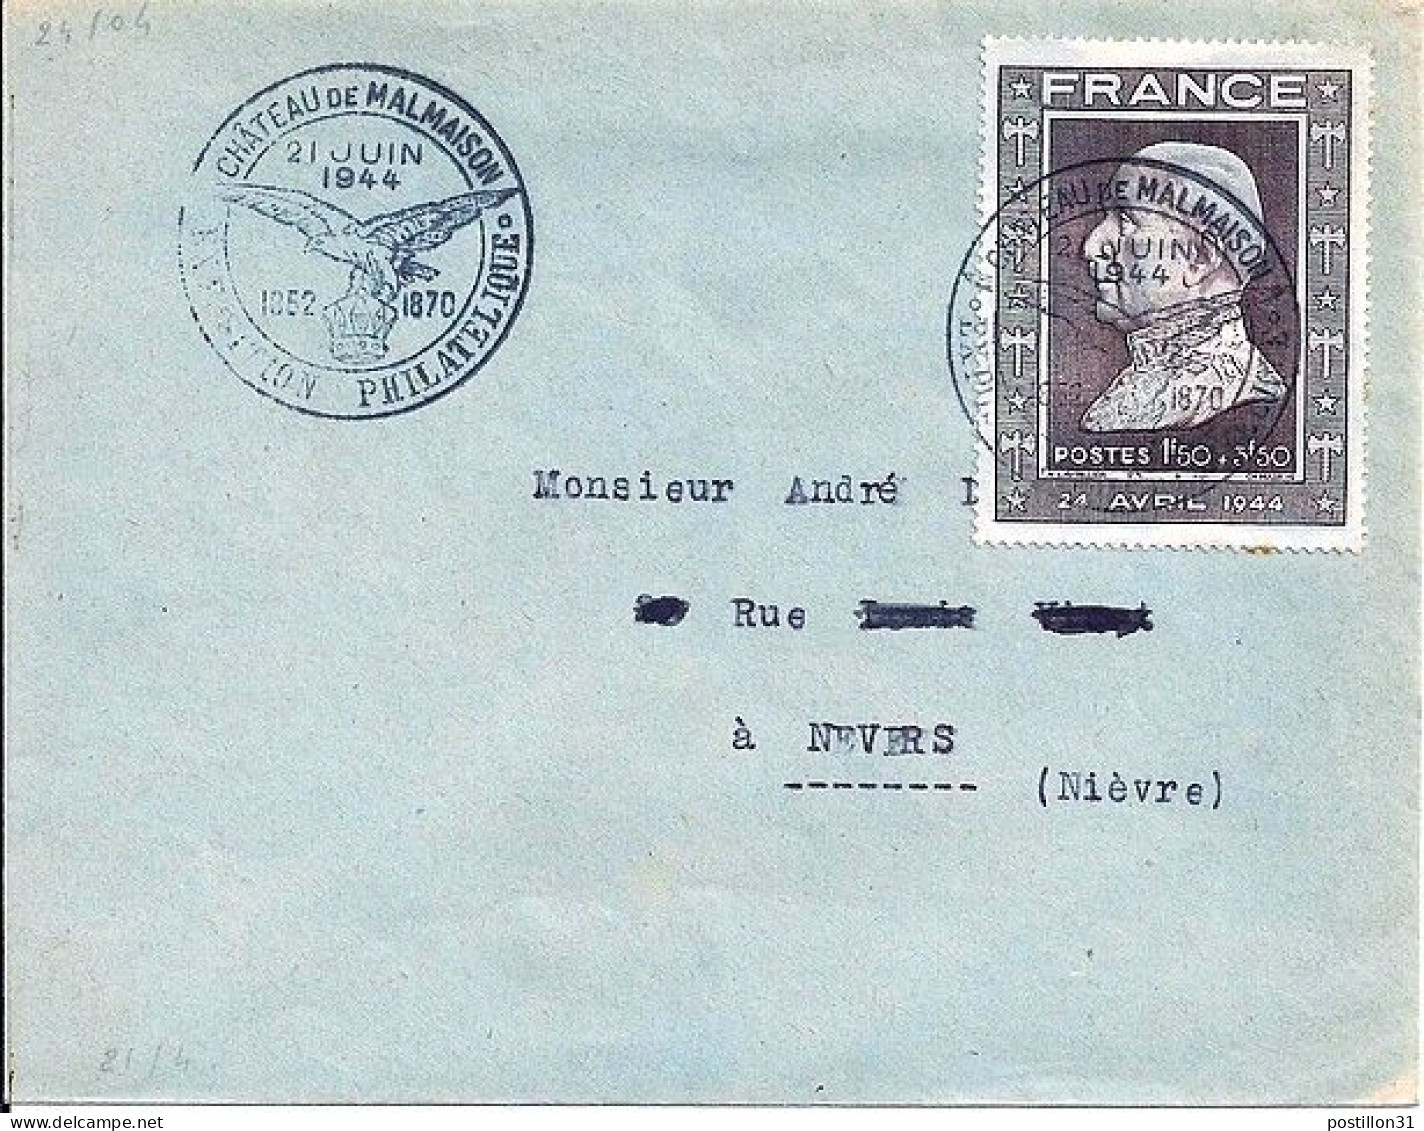 FRANCE N° 606 S/L. DE MALMAISON/21.6.44 - Storia Postale